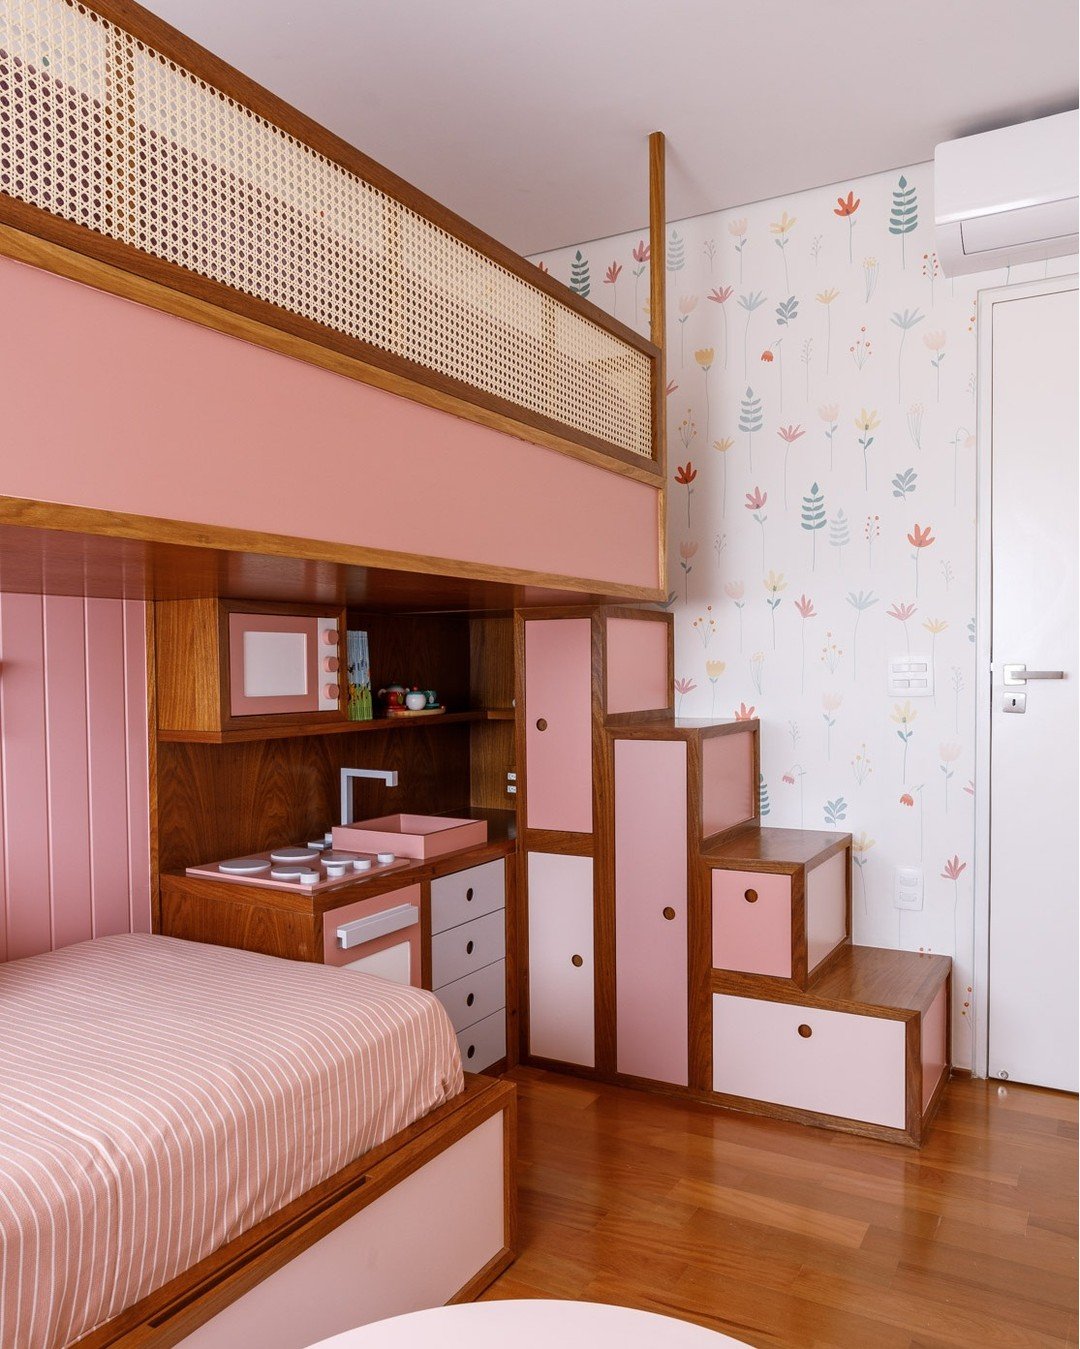 Habitación infantil planificada: un espacio de sueños, aventuras y crecimiento